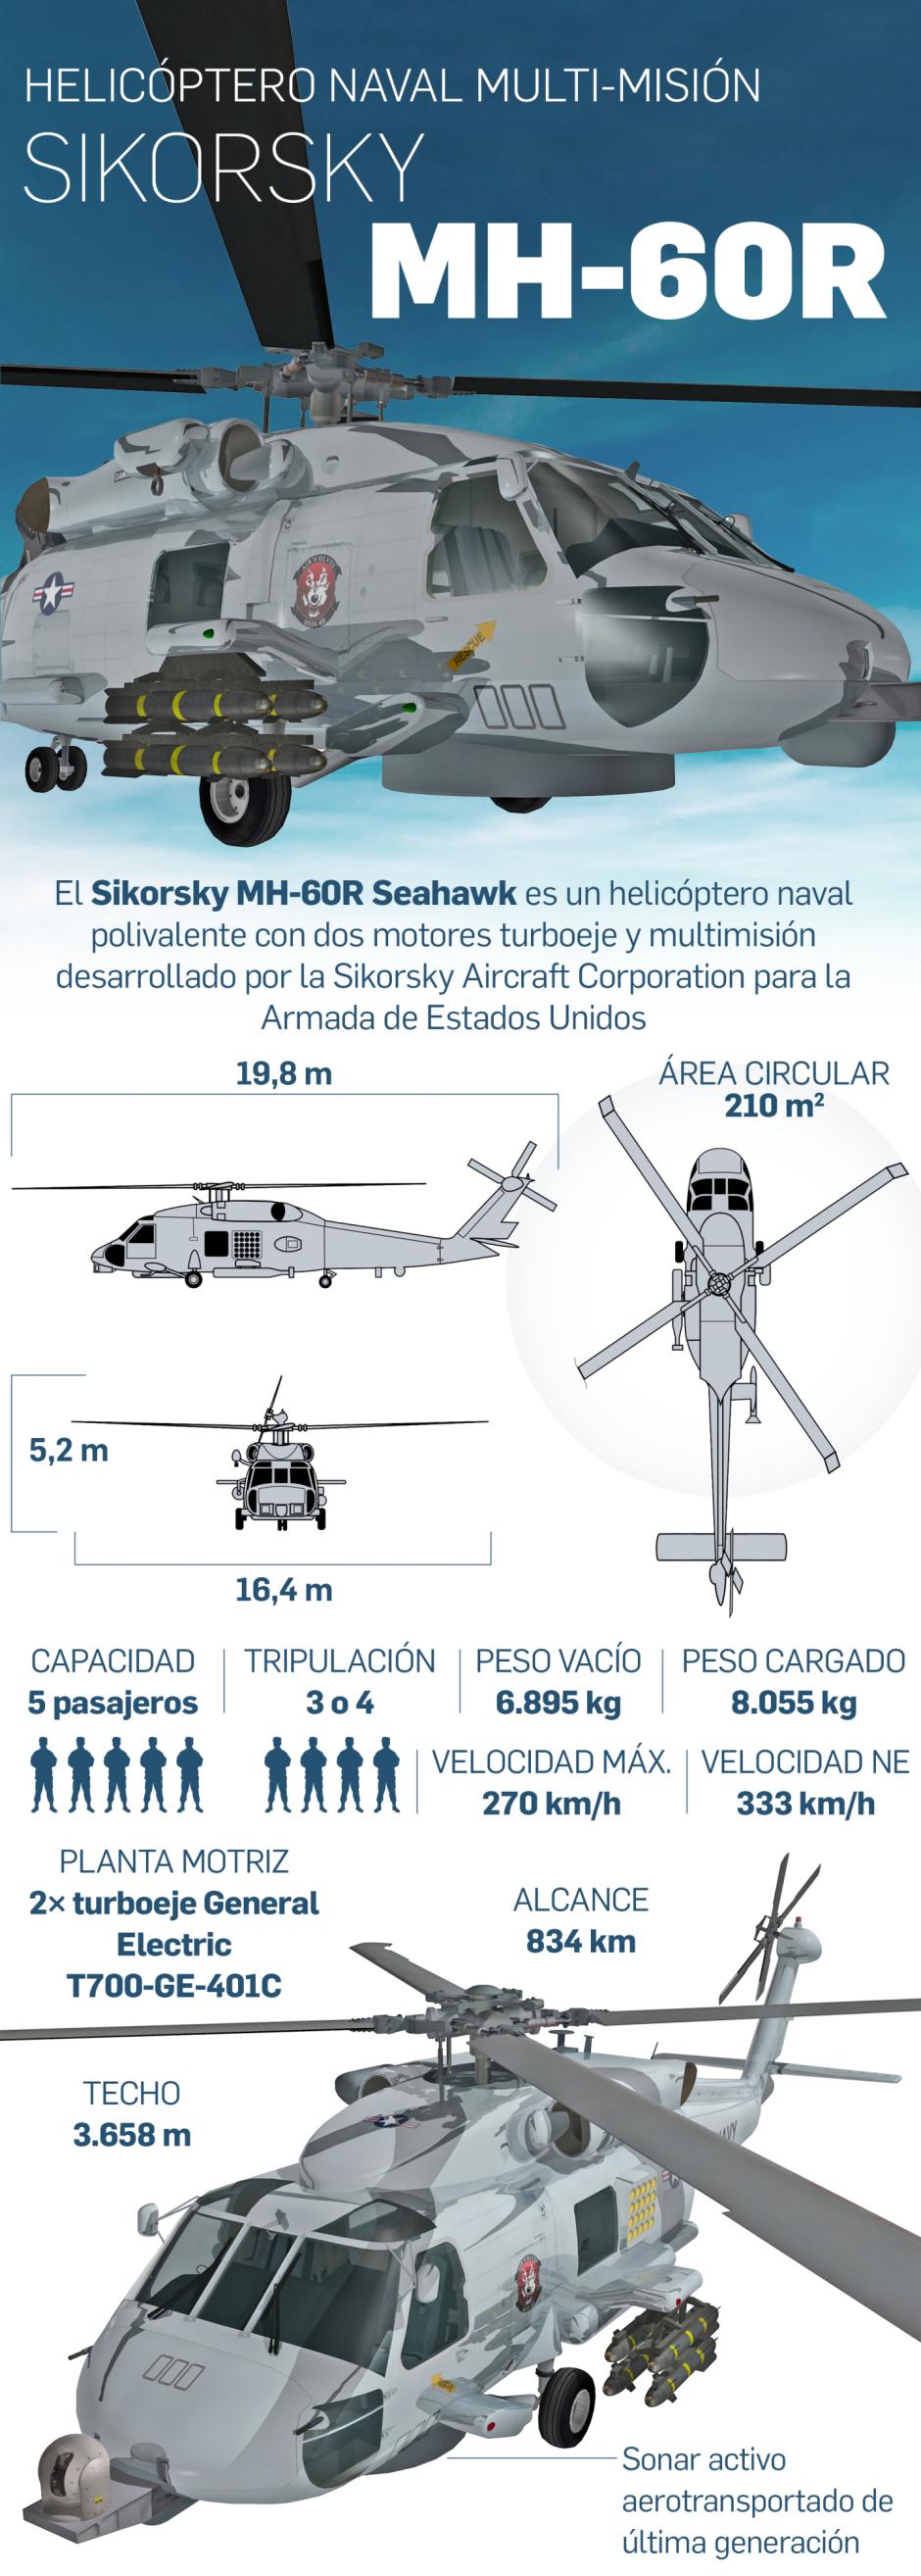 Los MH-60R son una variante tecnológicamente más avanzada de los SH-60B